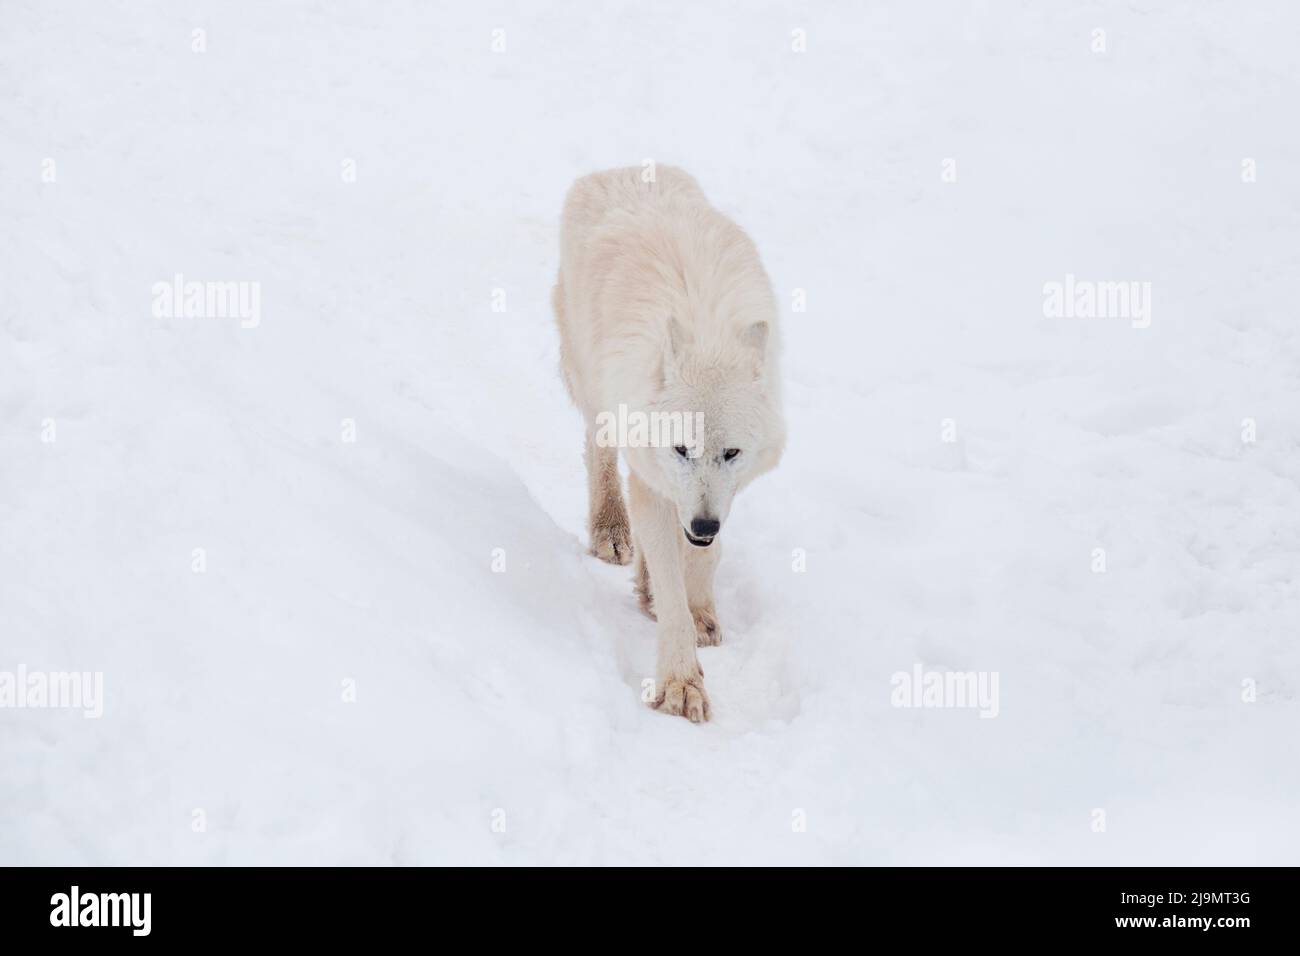 Il lupo polare arrabbiato cammina su una neve bianca e guarda la fotocamera. Canis lupus arctos. Lupo bianco o lupo tundra dell'alaska. Animali nella fauna selvatica. Foto Stock